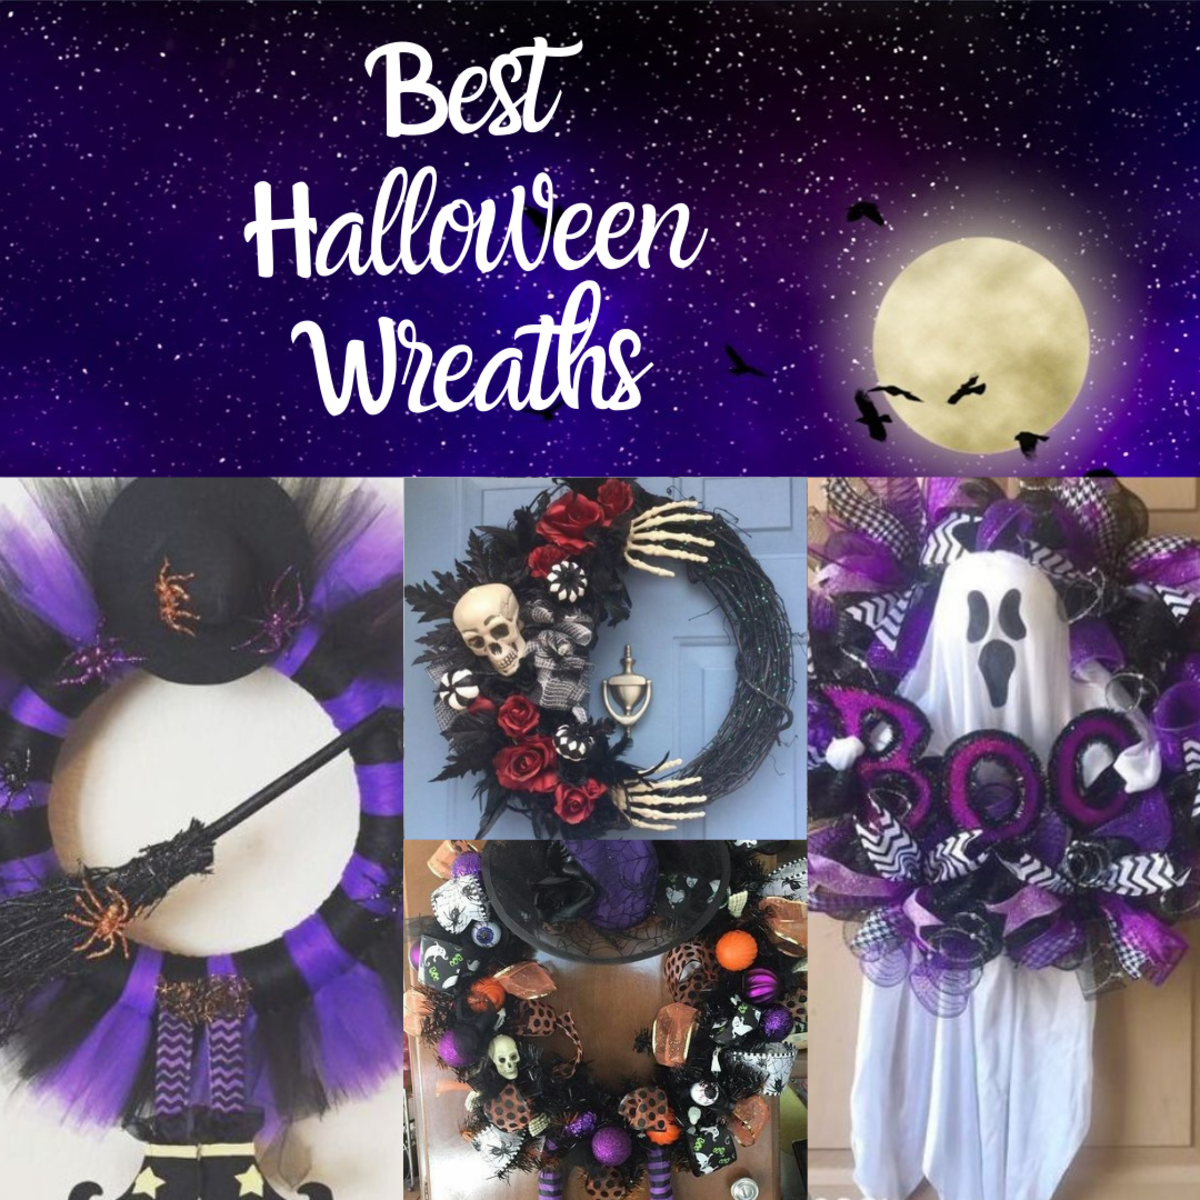 Fun and spooky Halloween wreaths for your front door